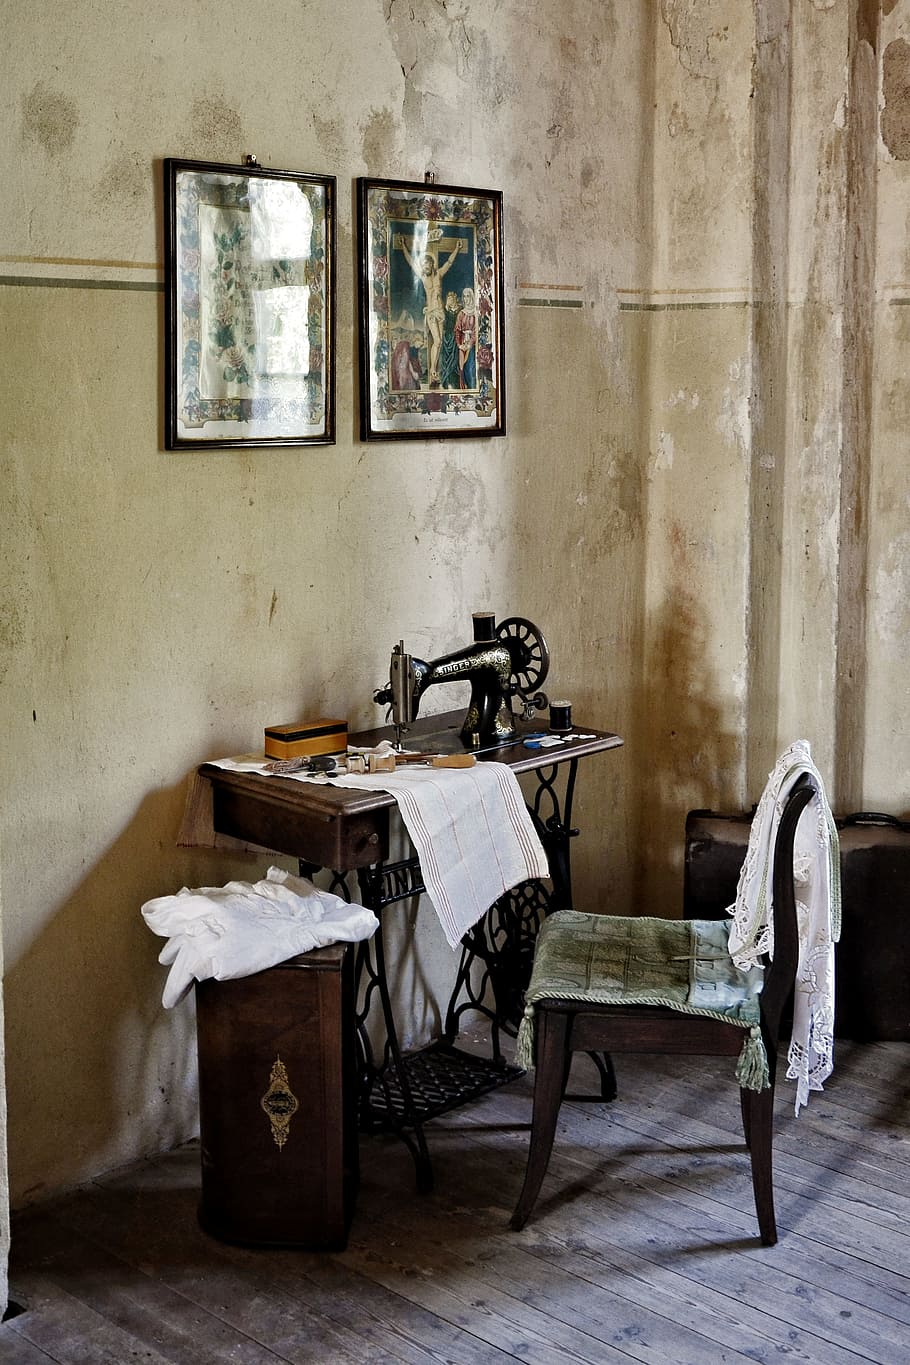 Máquina de coser, Silla, Imágenes, Viejo, históricamente, vintage, klöden burg, en interiores, ausencia, anticuado